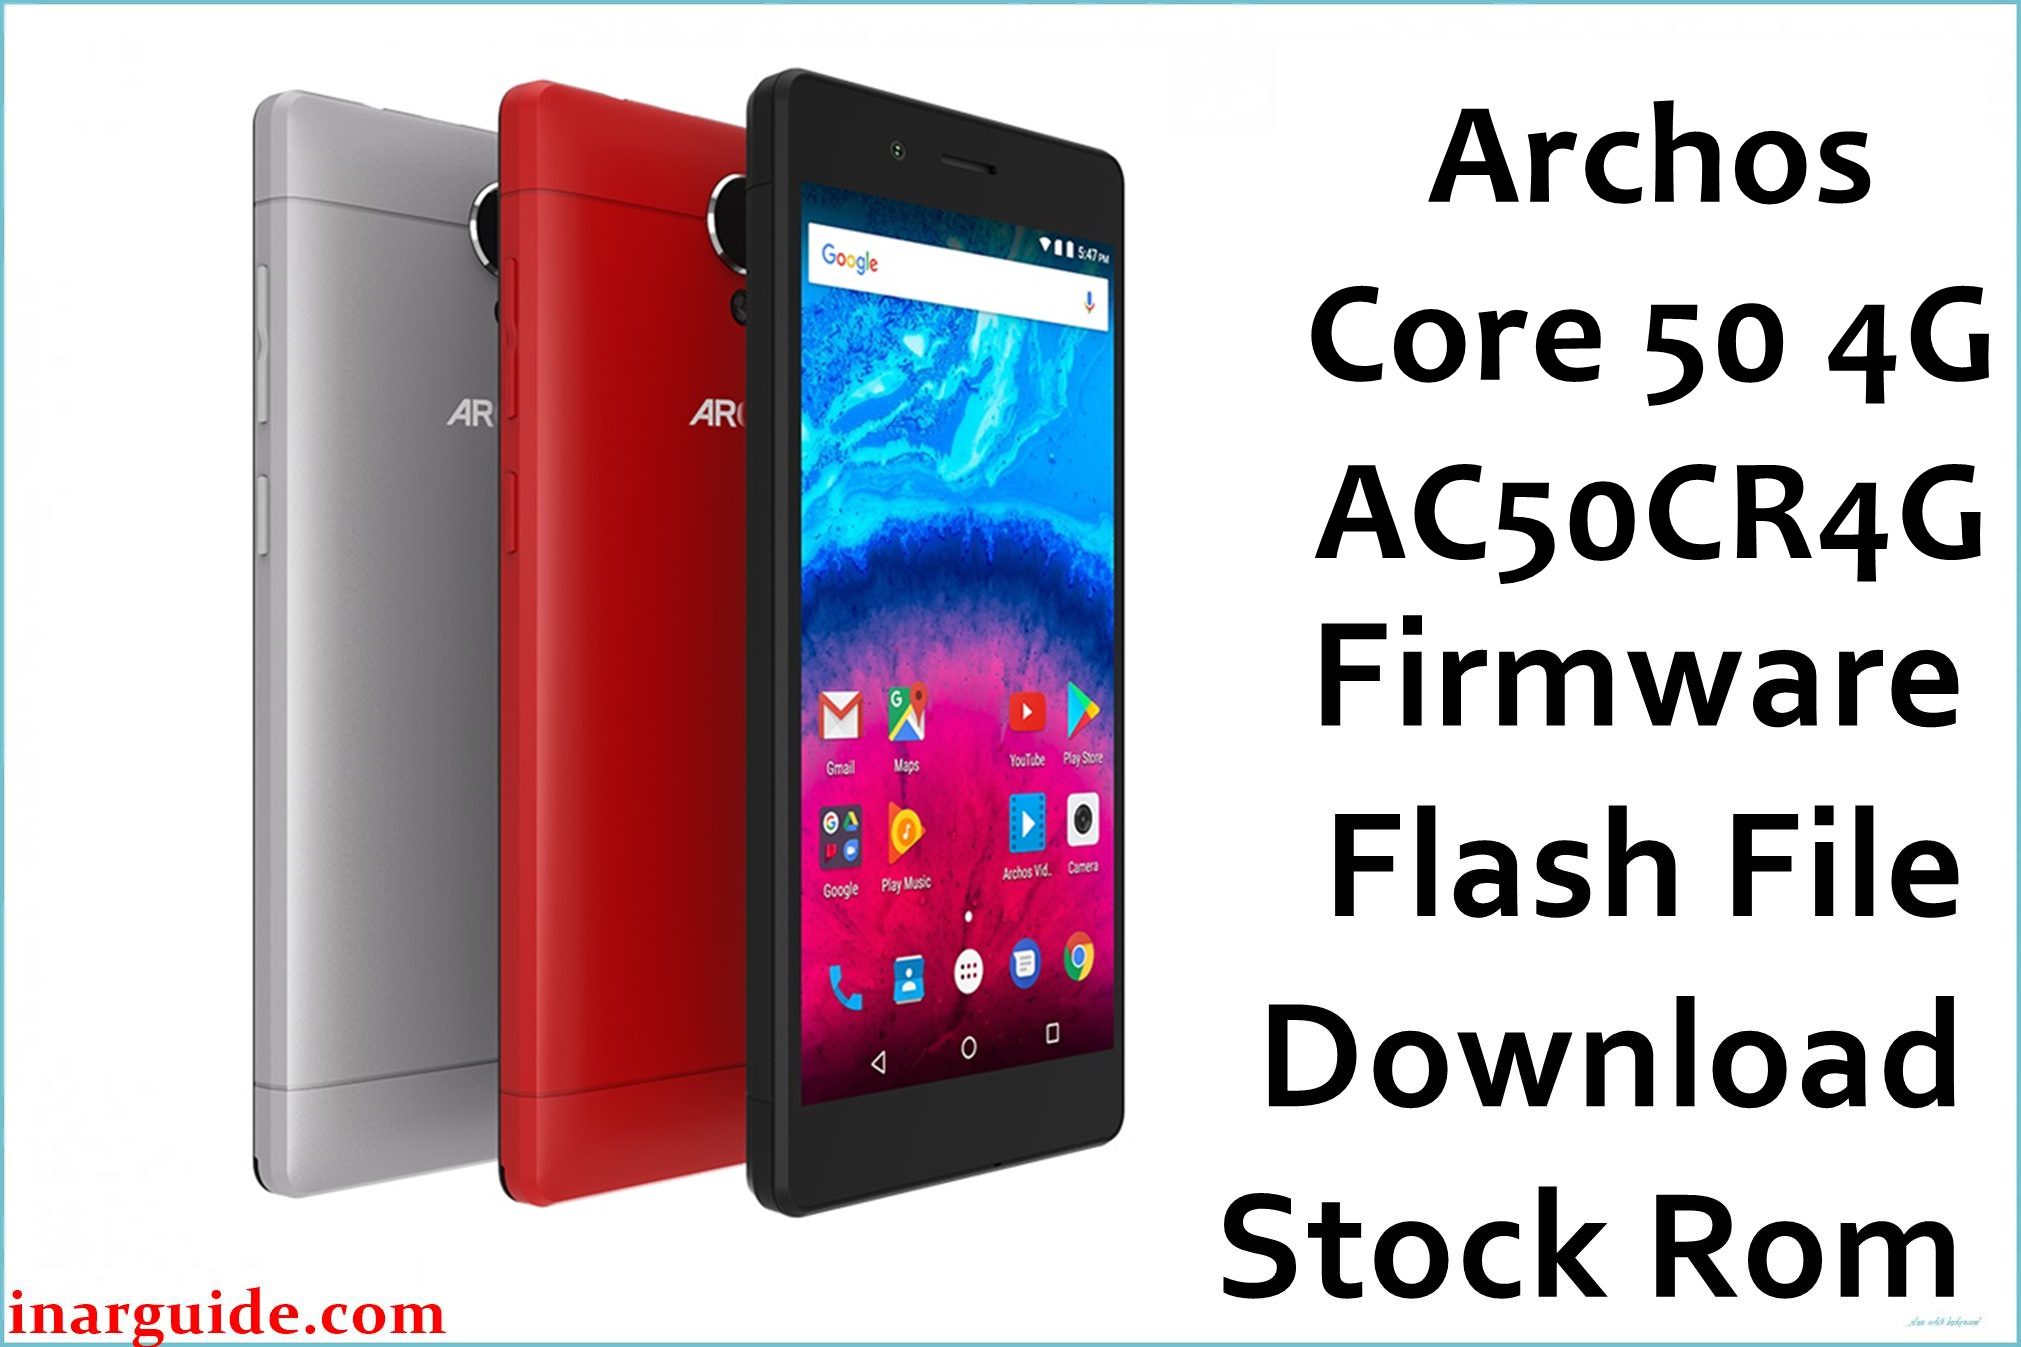 Archos Core 50 4G AC50CR4G